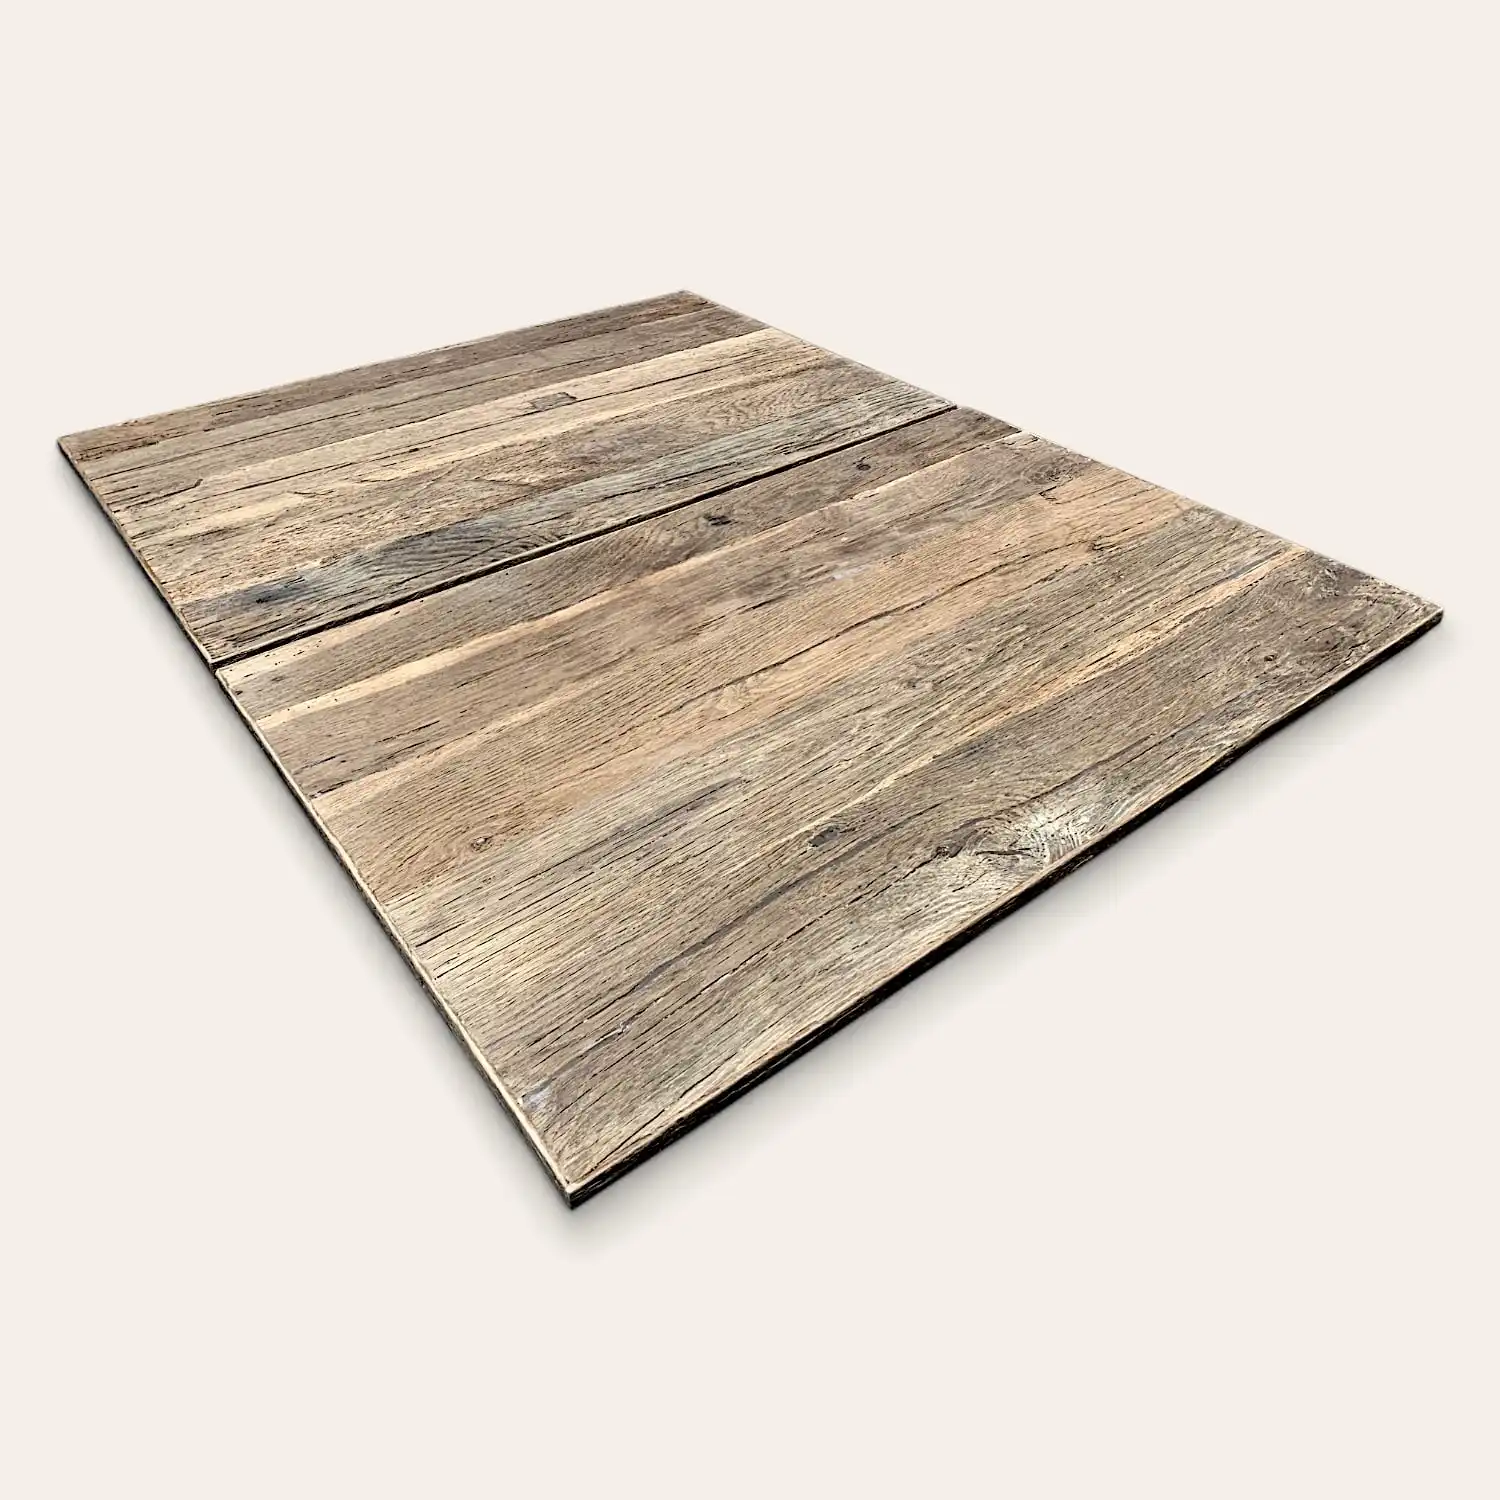  Revêtement de sol stratifié Panneaux en vieux bois avec grain et texture visibles, certains panneaux sont détachés montrant comment ils s'emboîtent. 